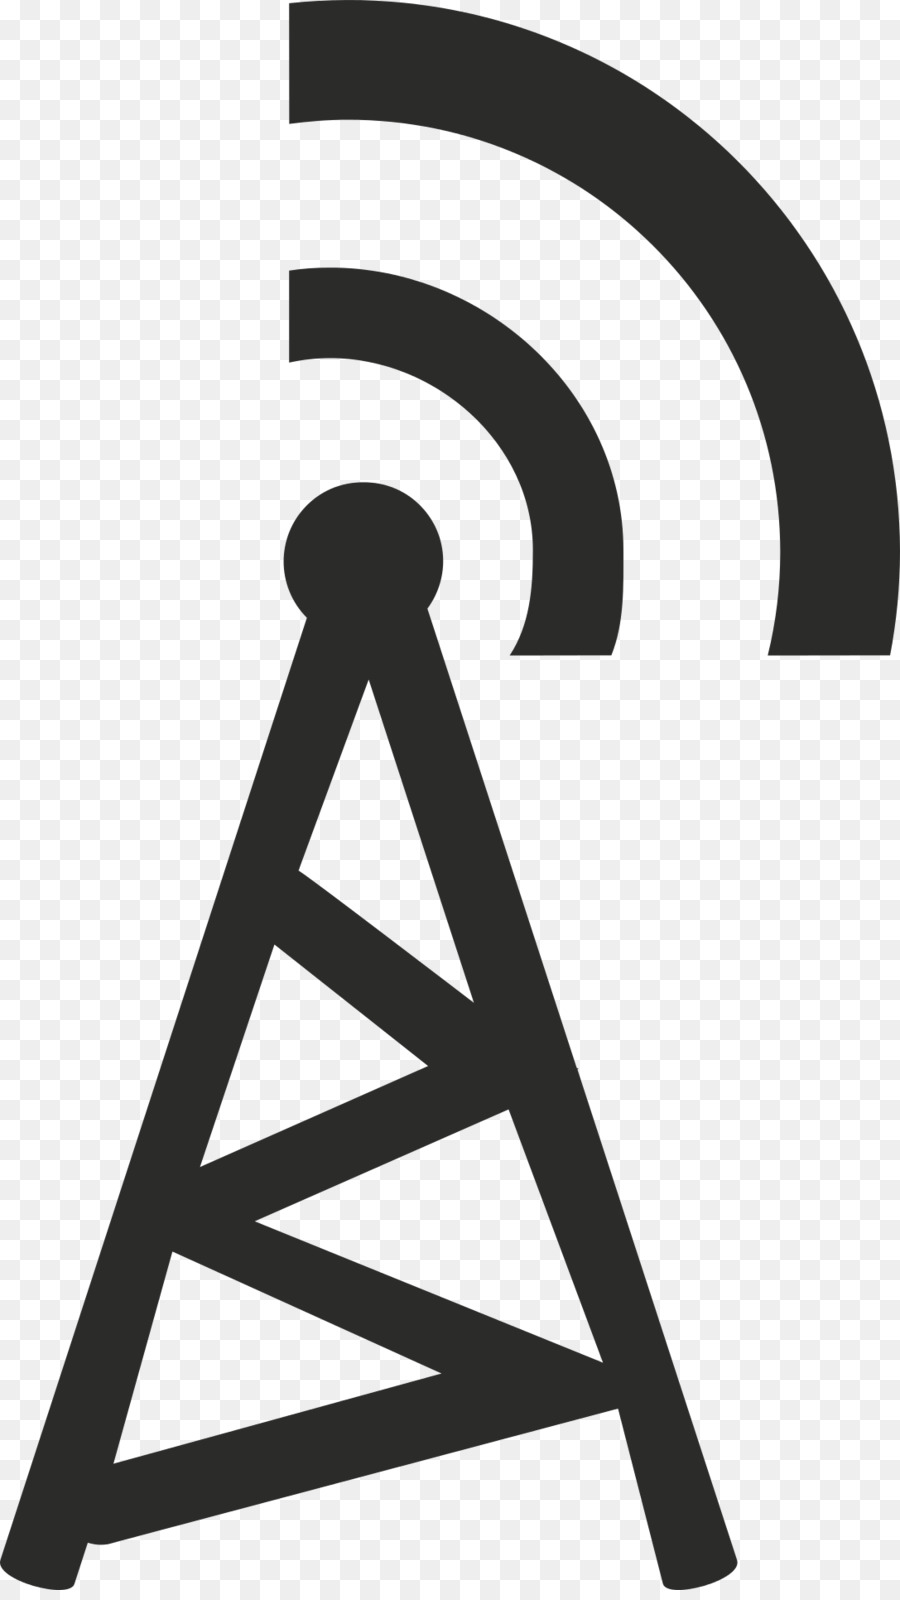 La connessione Wi-Fi gratuita, Internet, Cellulari, videocamera Wireless - ascia logo